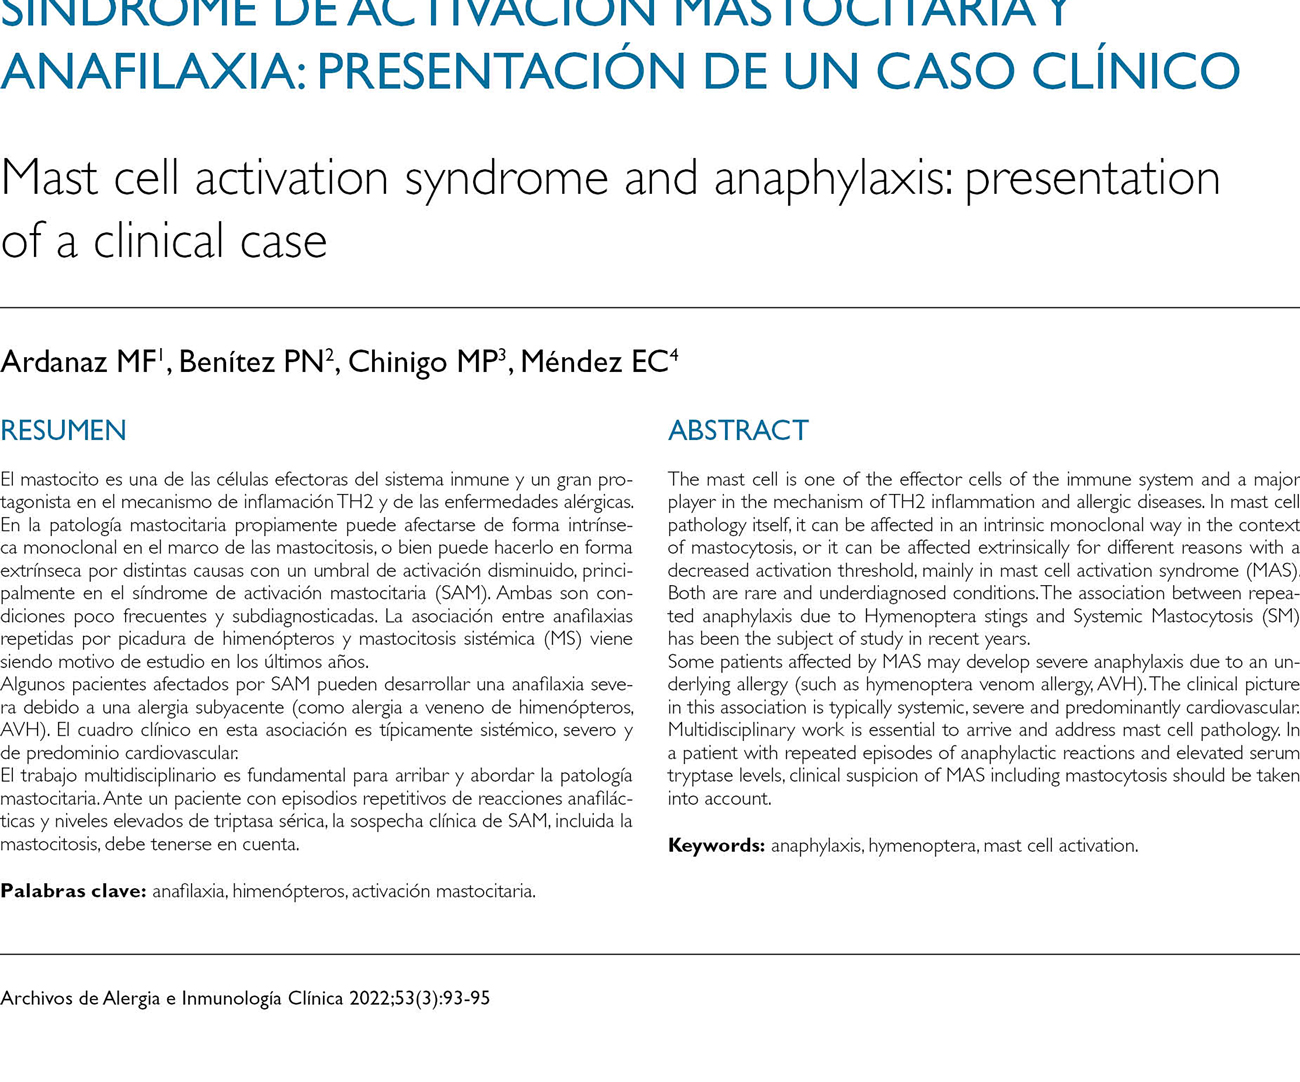 Síndrome de activación mastocitaria y anafilaxia: presentación de un caso clínico